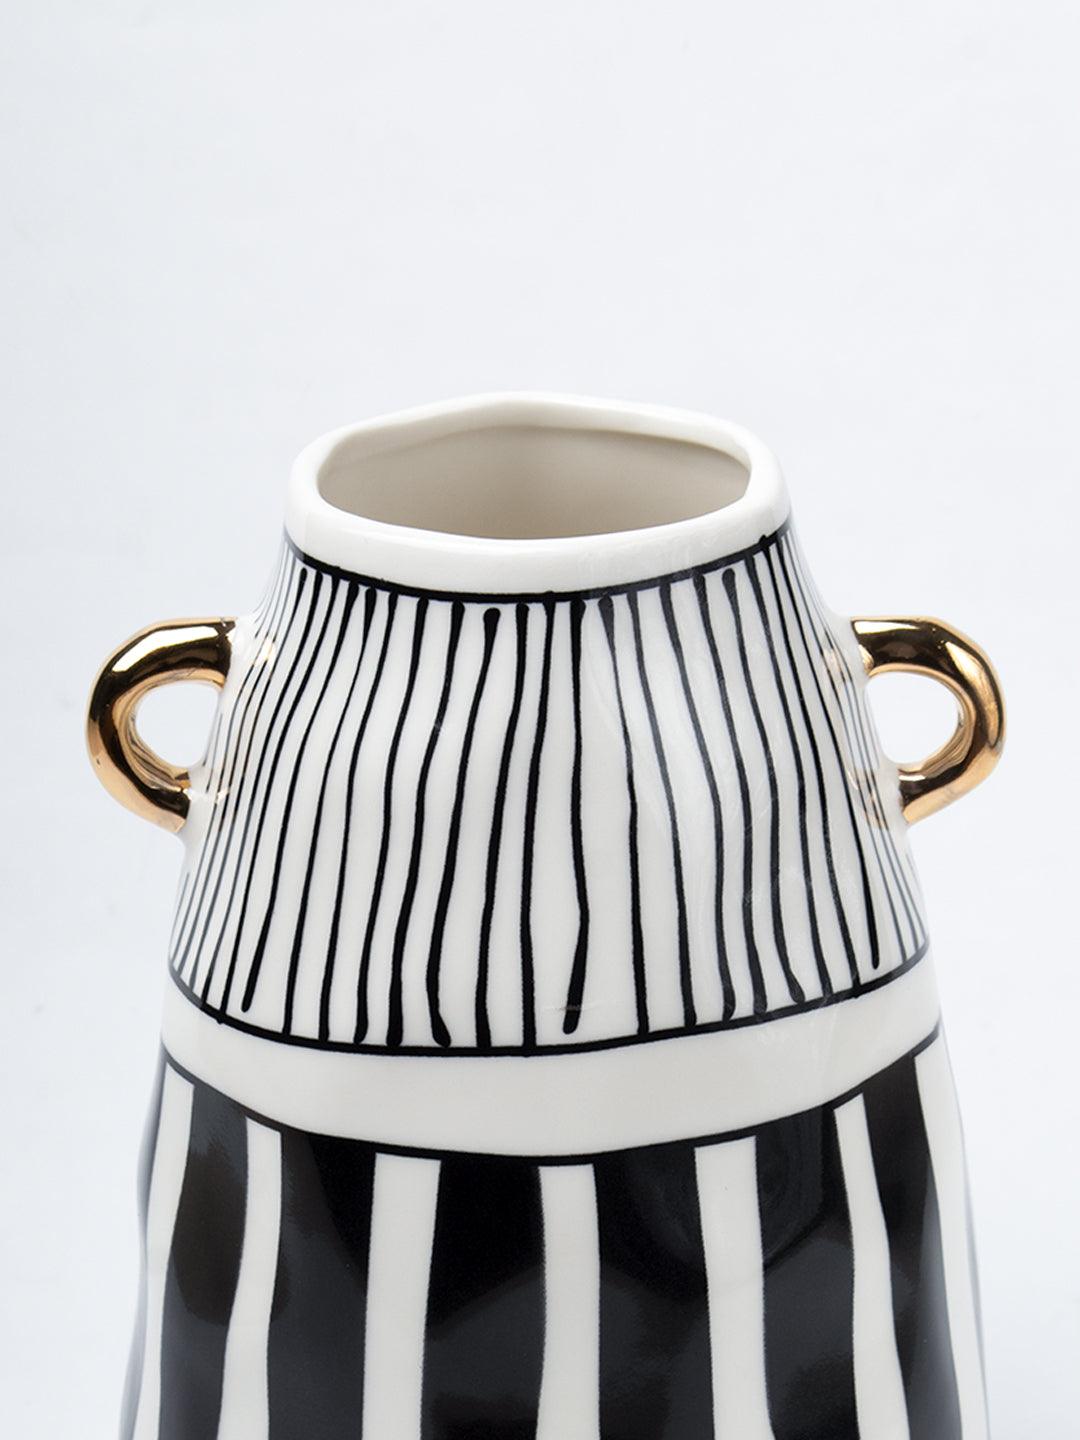 Black & White Ceramic Vase - Ribbed Design, Flower Holder - 4